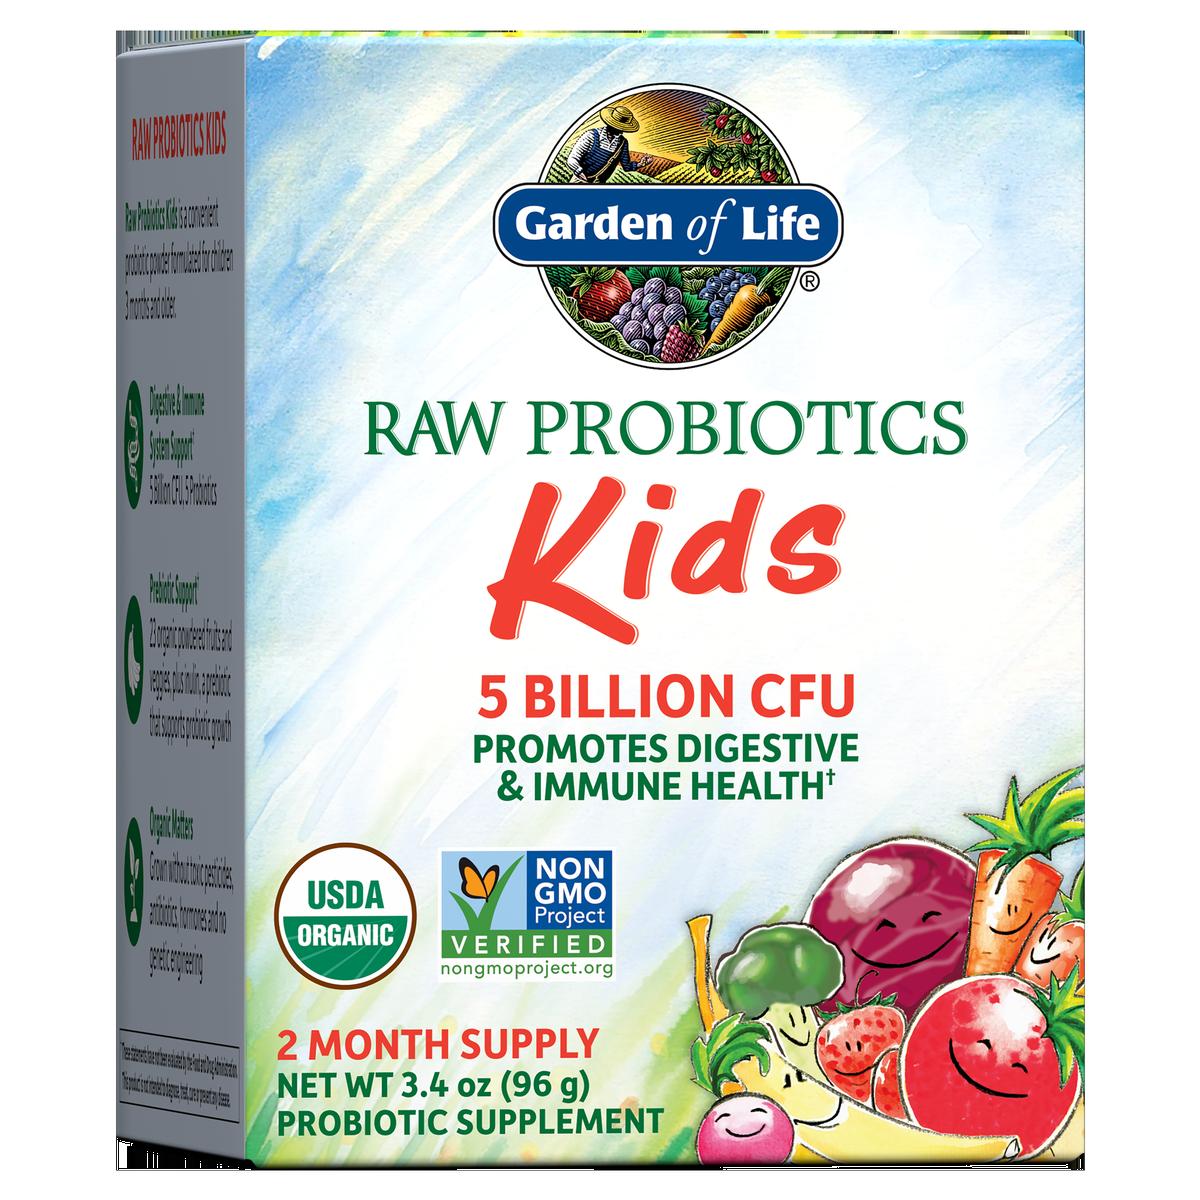 Primary image of Raw Probiotics Kids